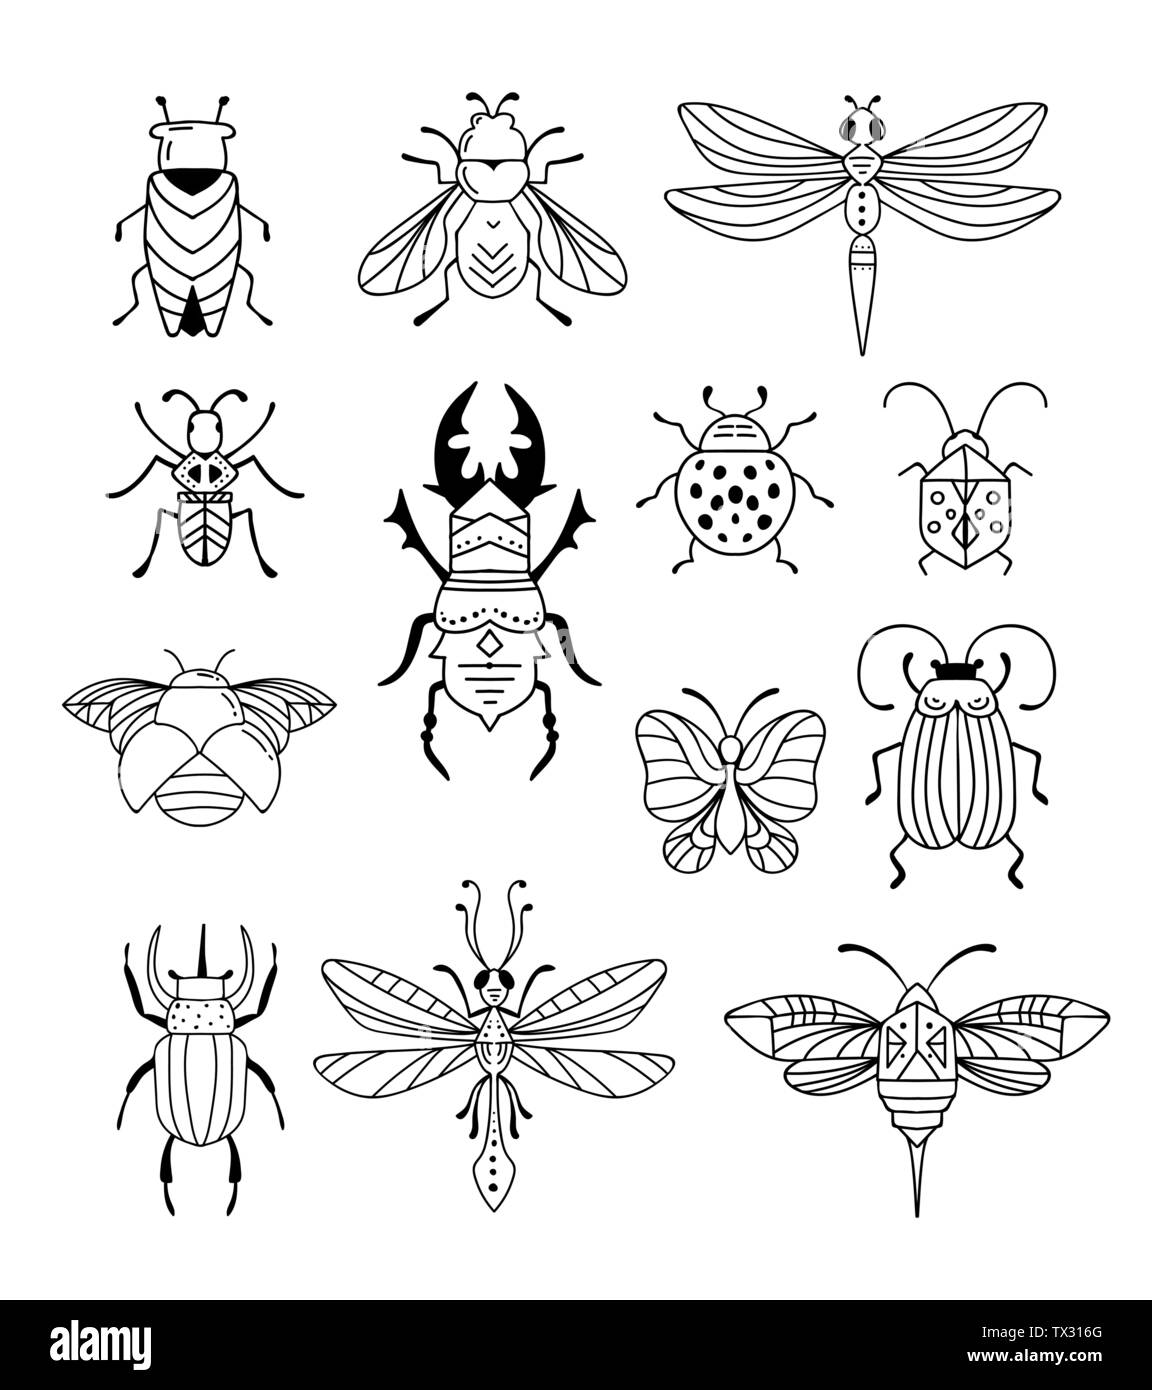 Ungeziefer, Insekten, Schmetterling, Marienkäfer, Käfer, Schwalbenschwanz, libelle Sammlung. Moderne Icons, Symbole und Abbildungen Stock Vektor